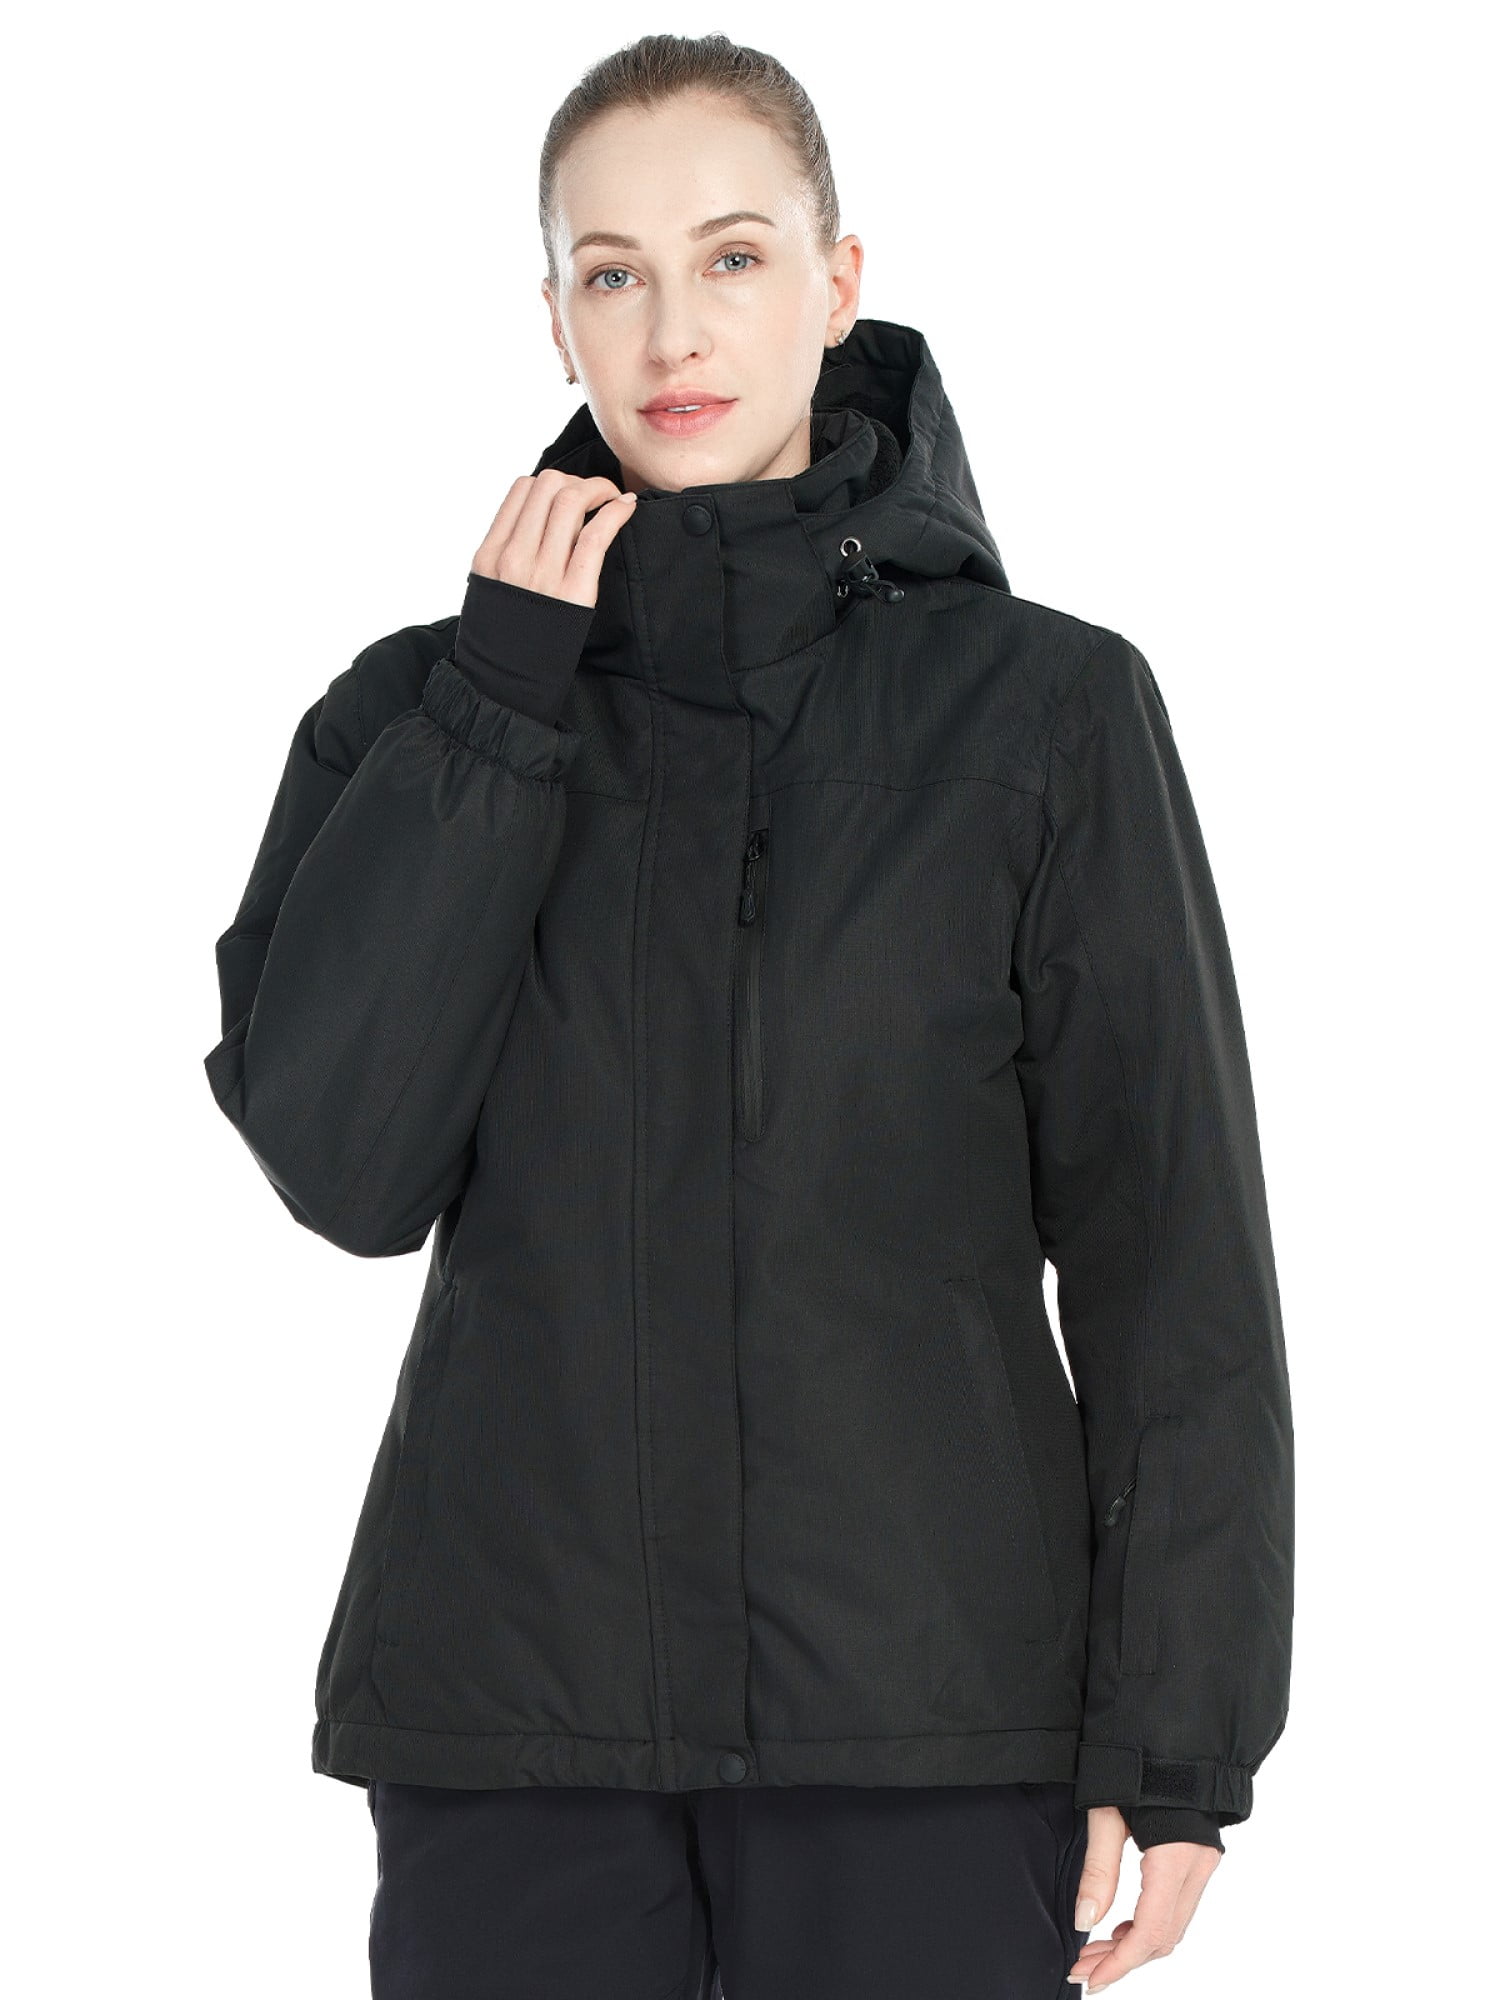 FREE SOLDIER Women's Waterproof Ski Snow Jacket Fleece Lined Warm ...